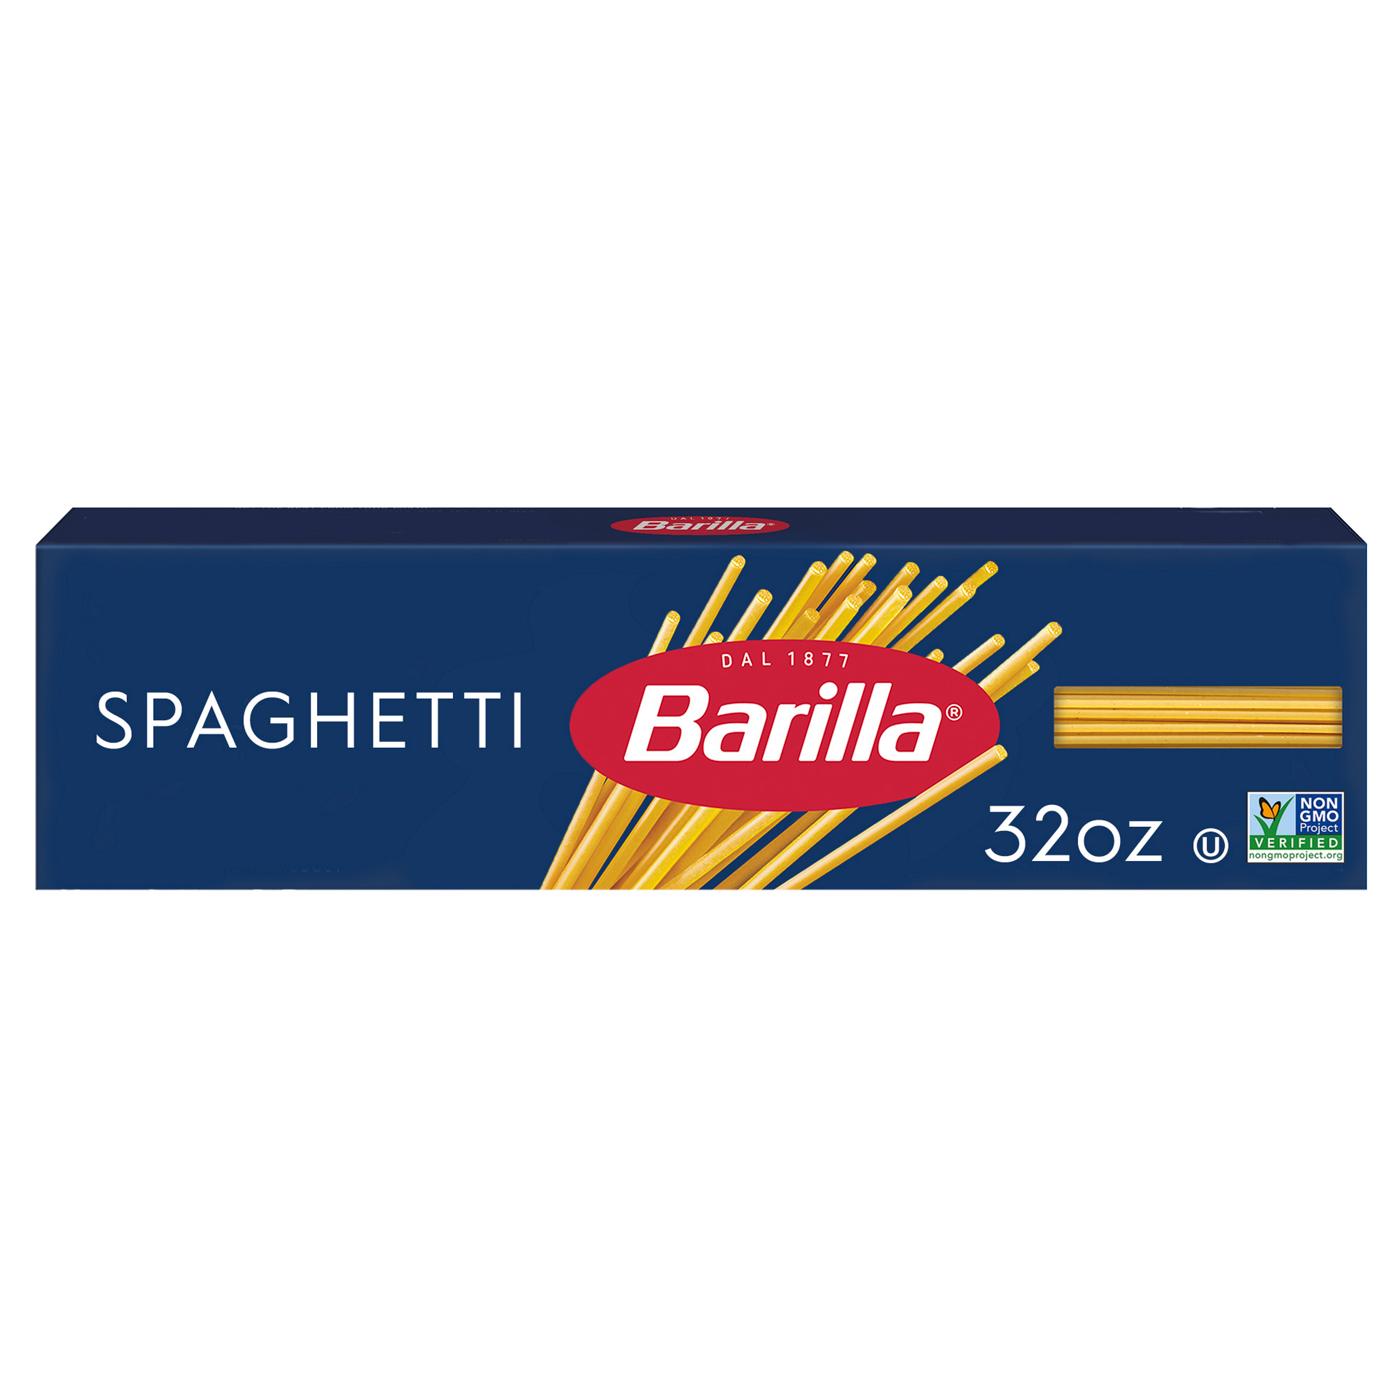 Barilla Spaghetti Pasta; image 1 of 6